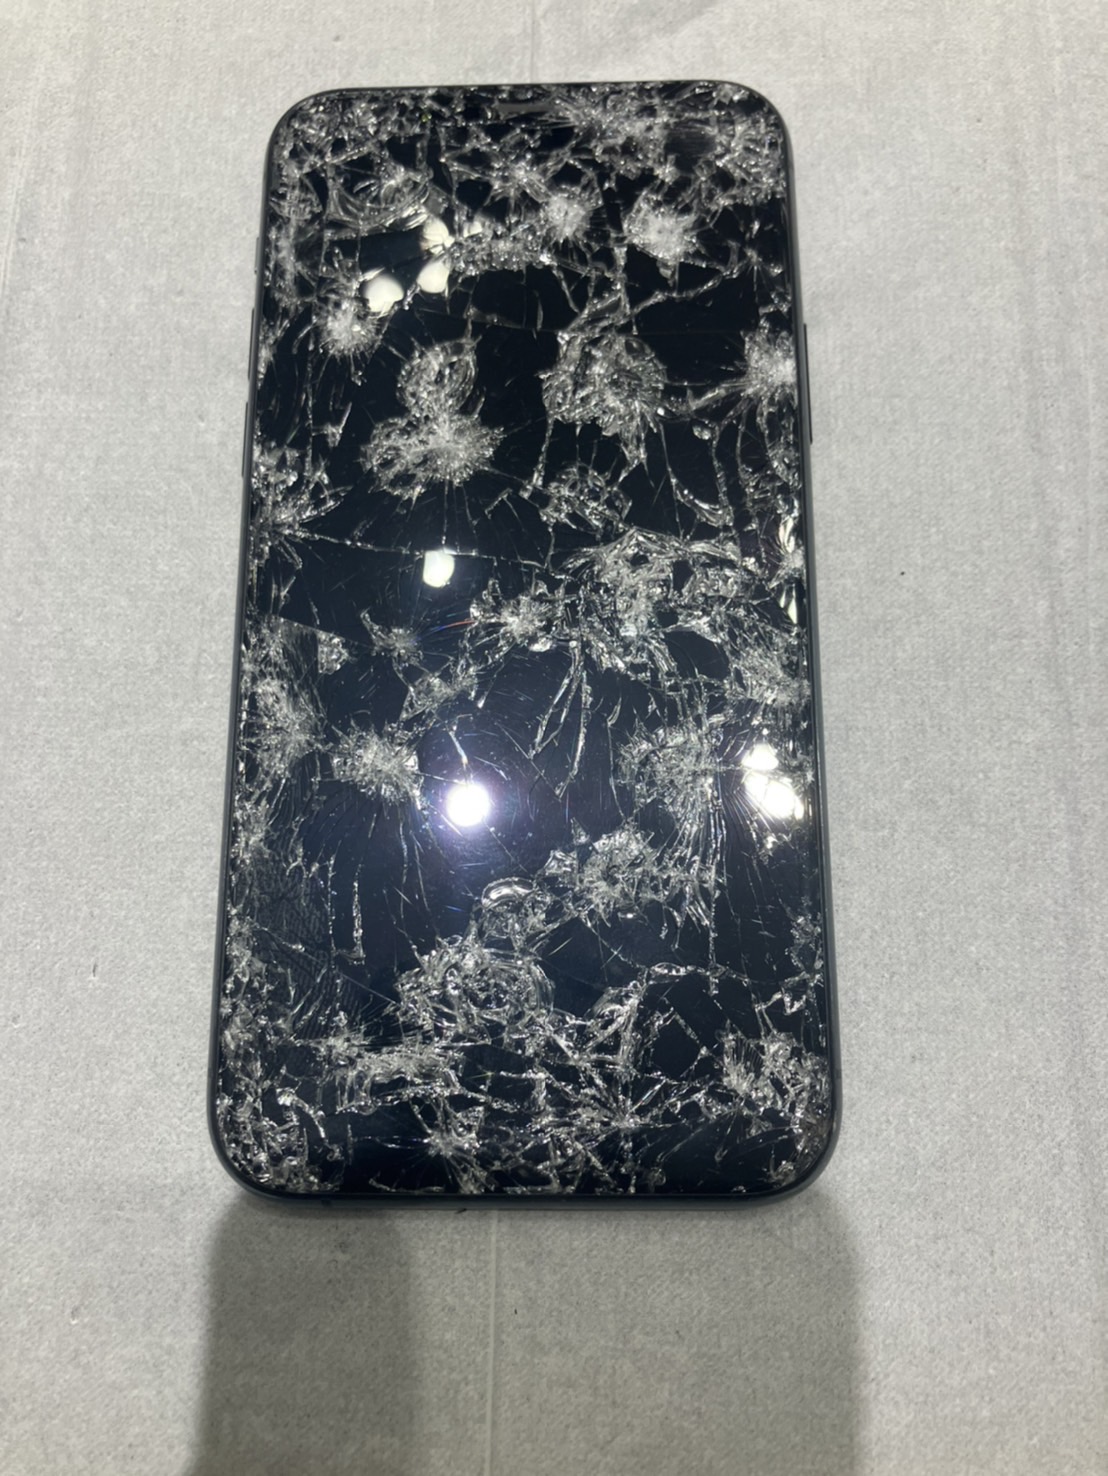 iPhone11Proの画面割れで映らなくなった状態の修理